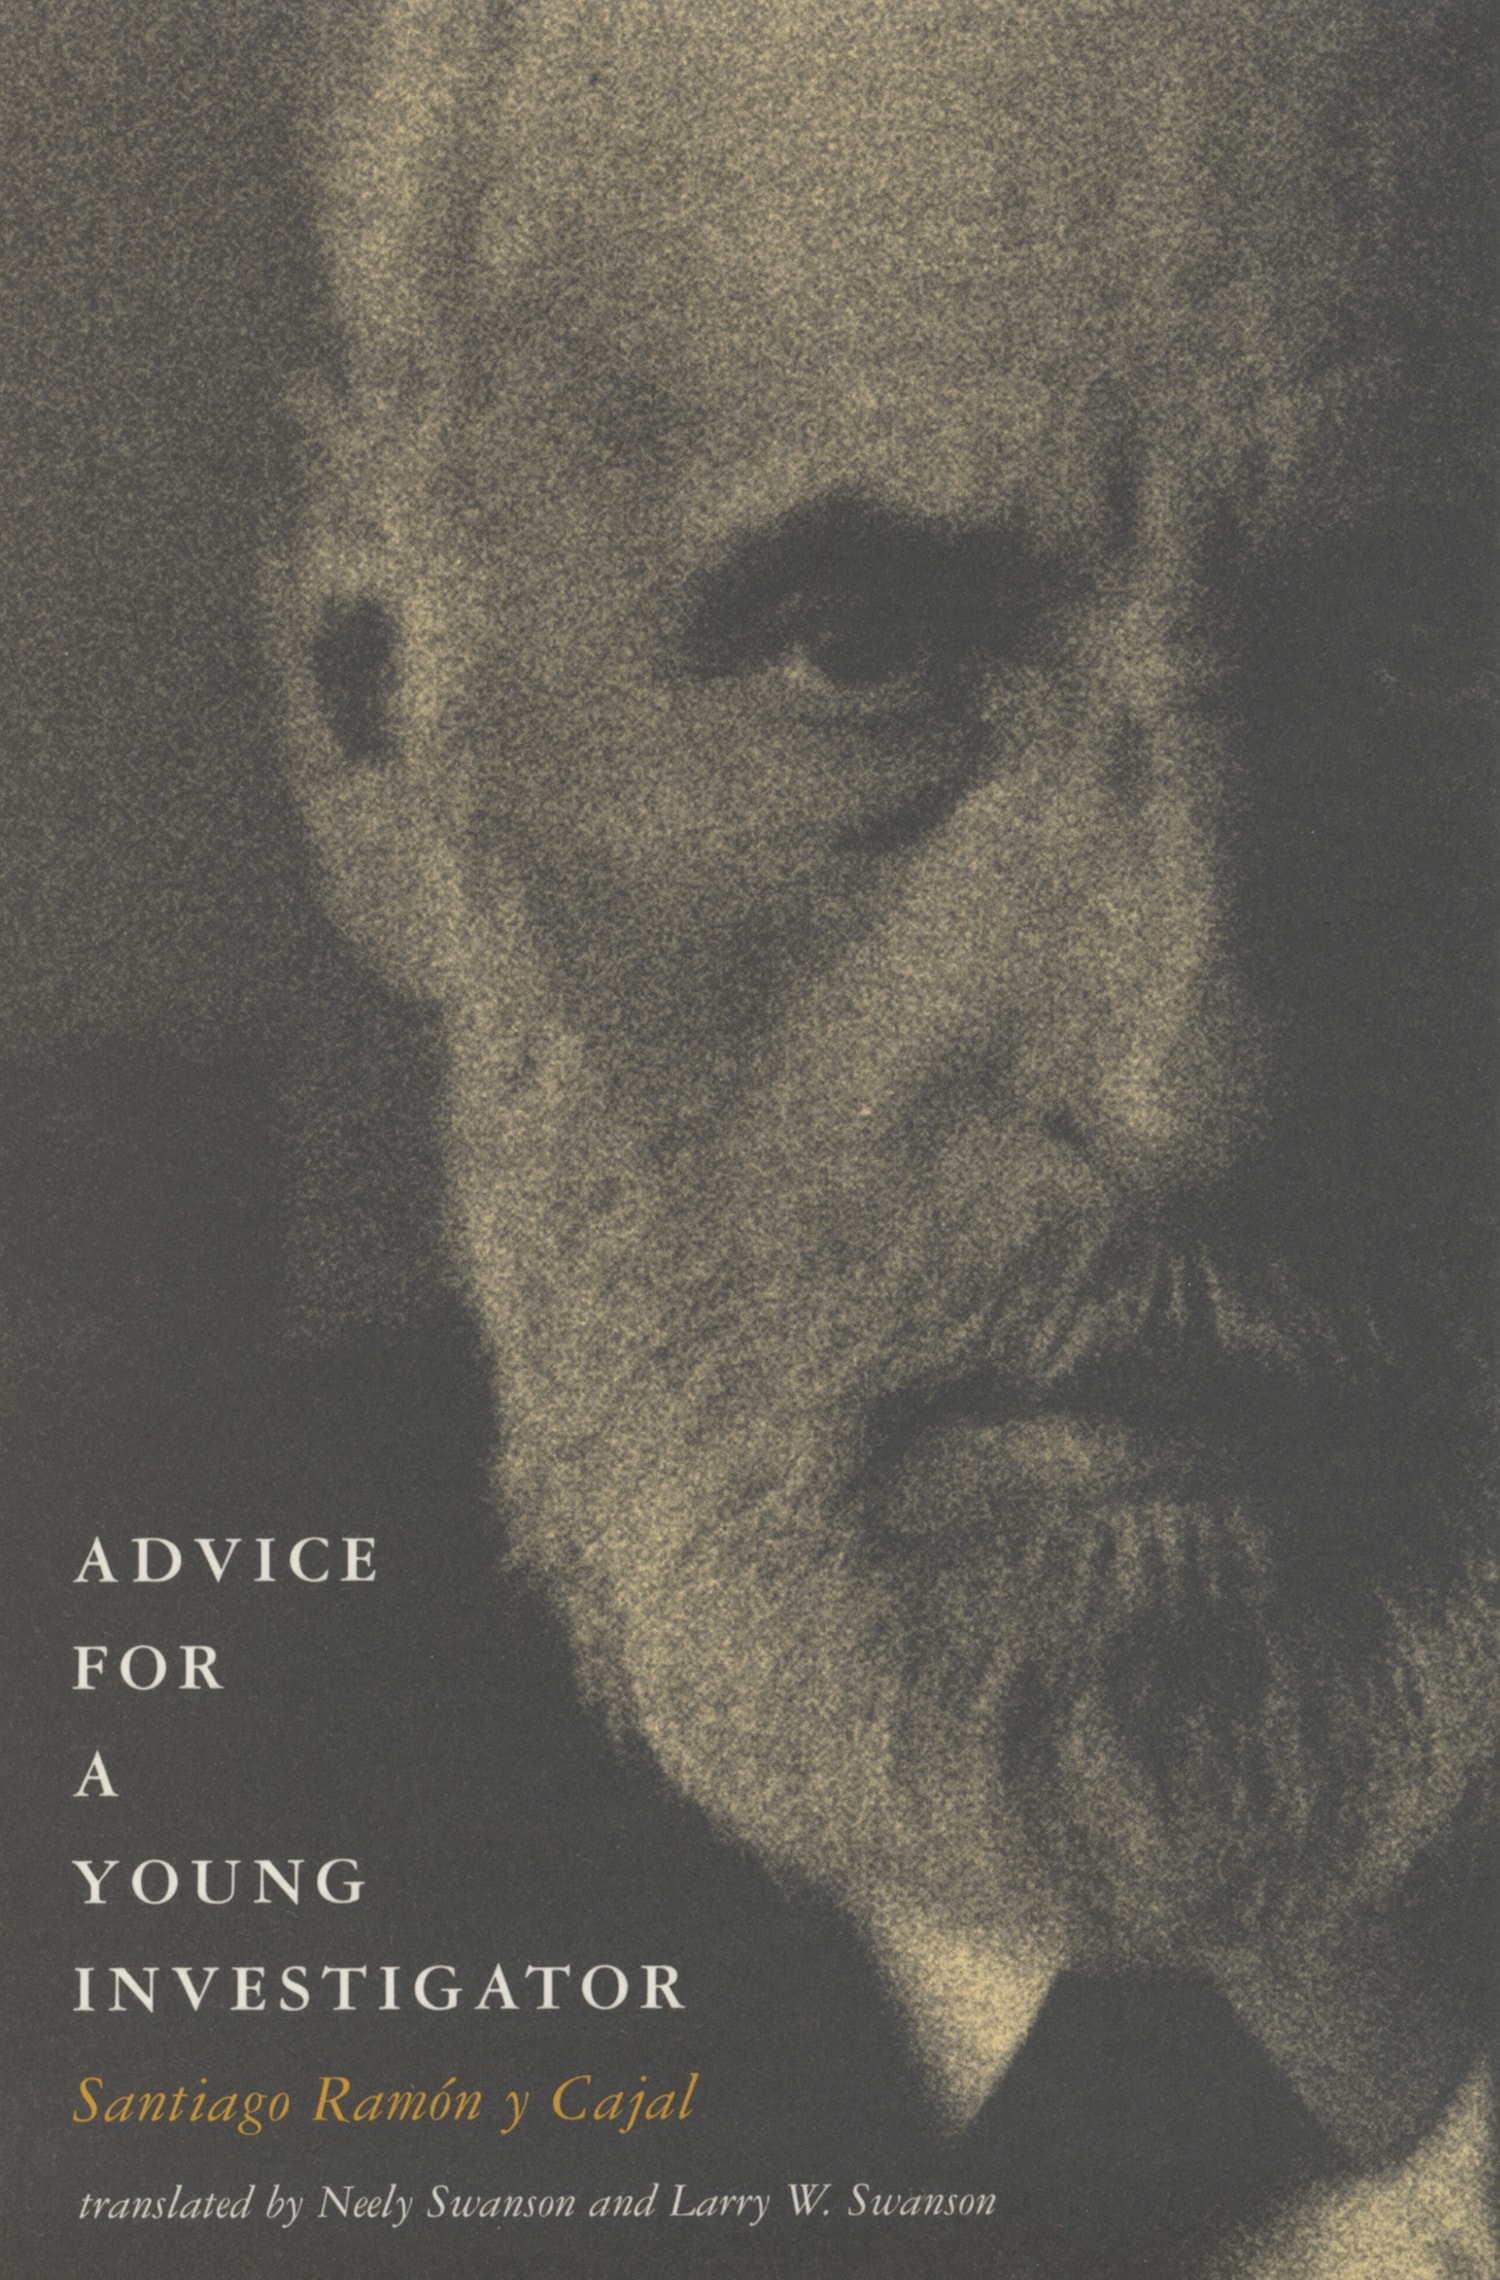 หนังสือ Advice for a Young Investigator (1999) โดย Santiago Ramón y Cajal